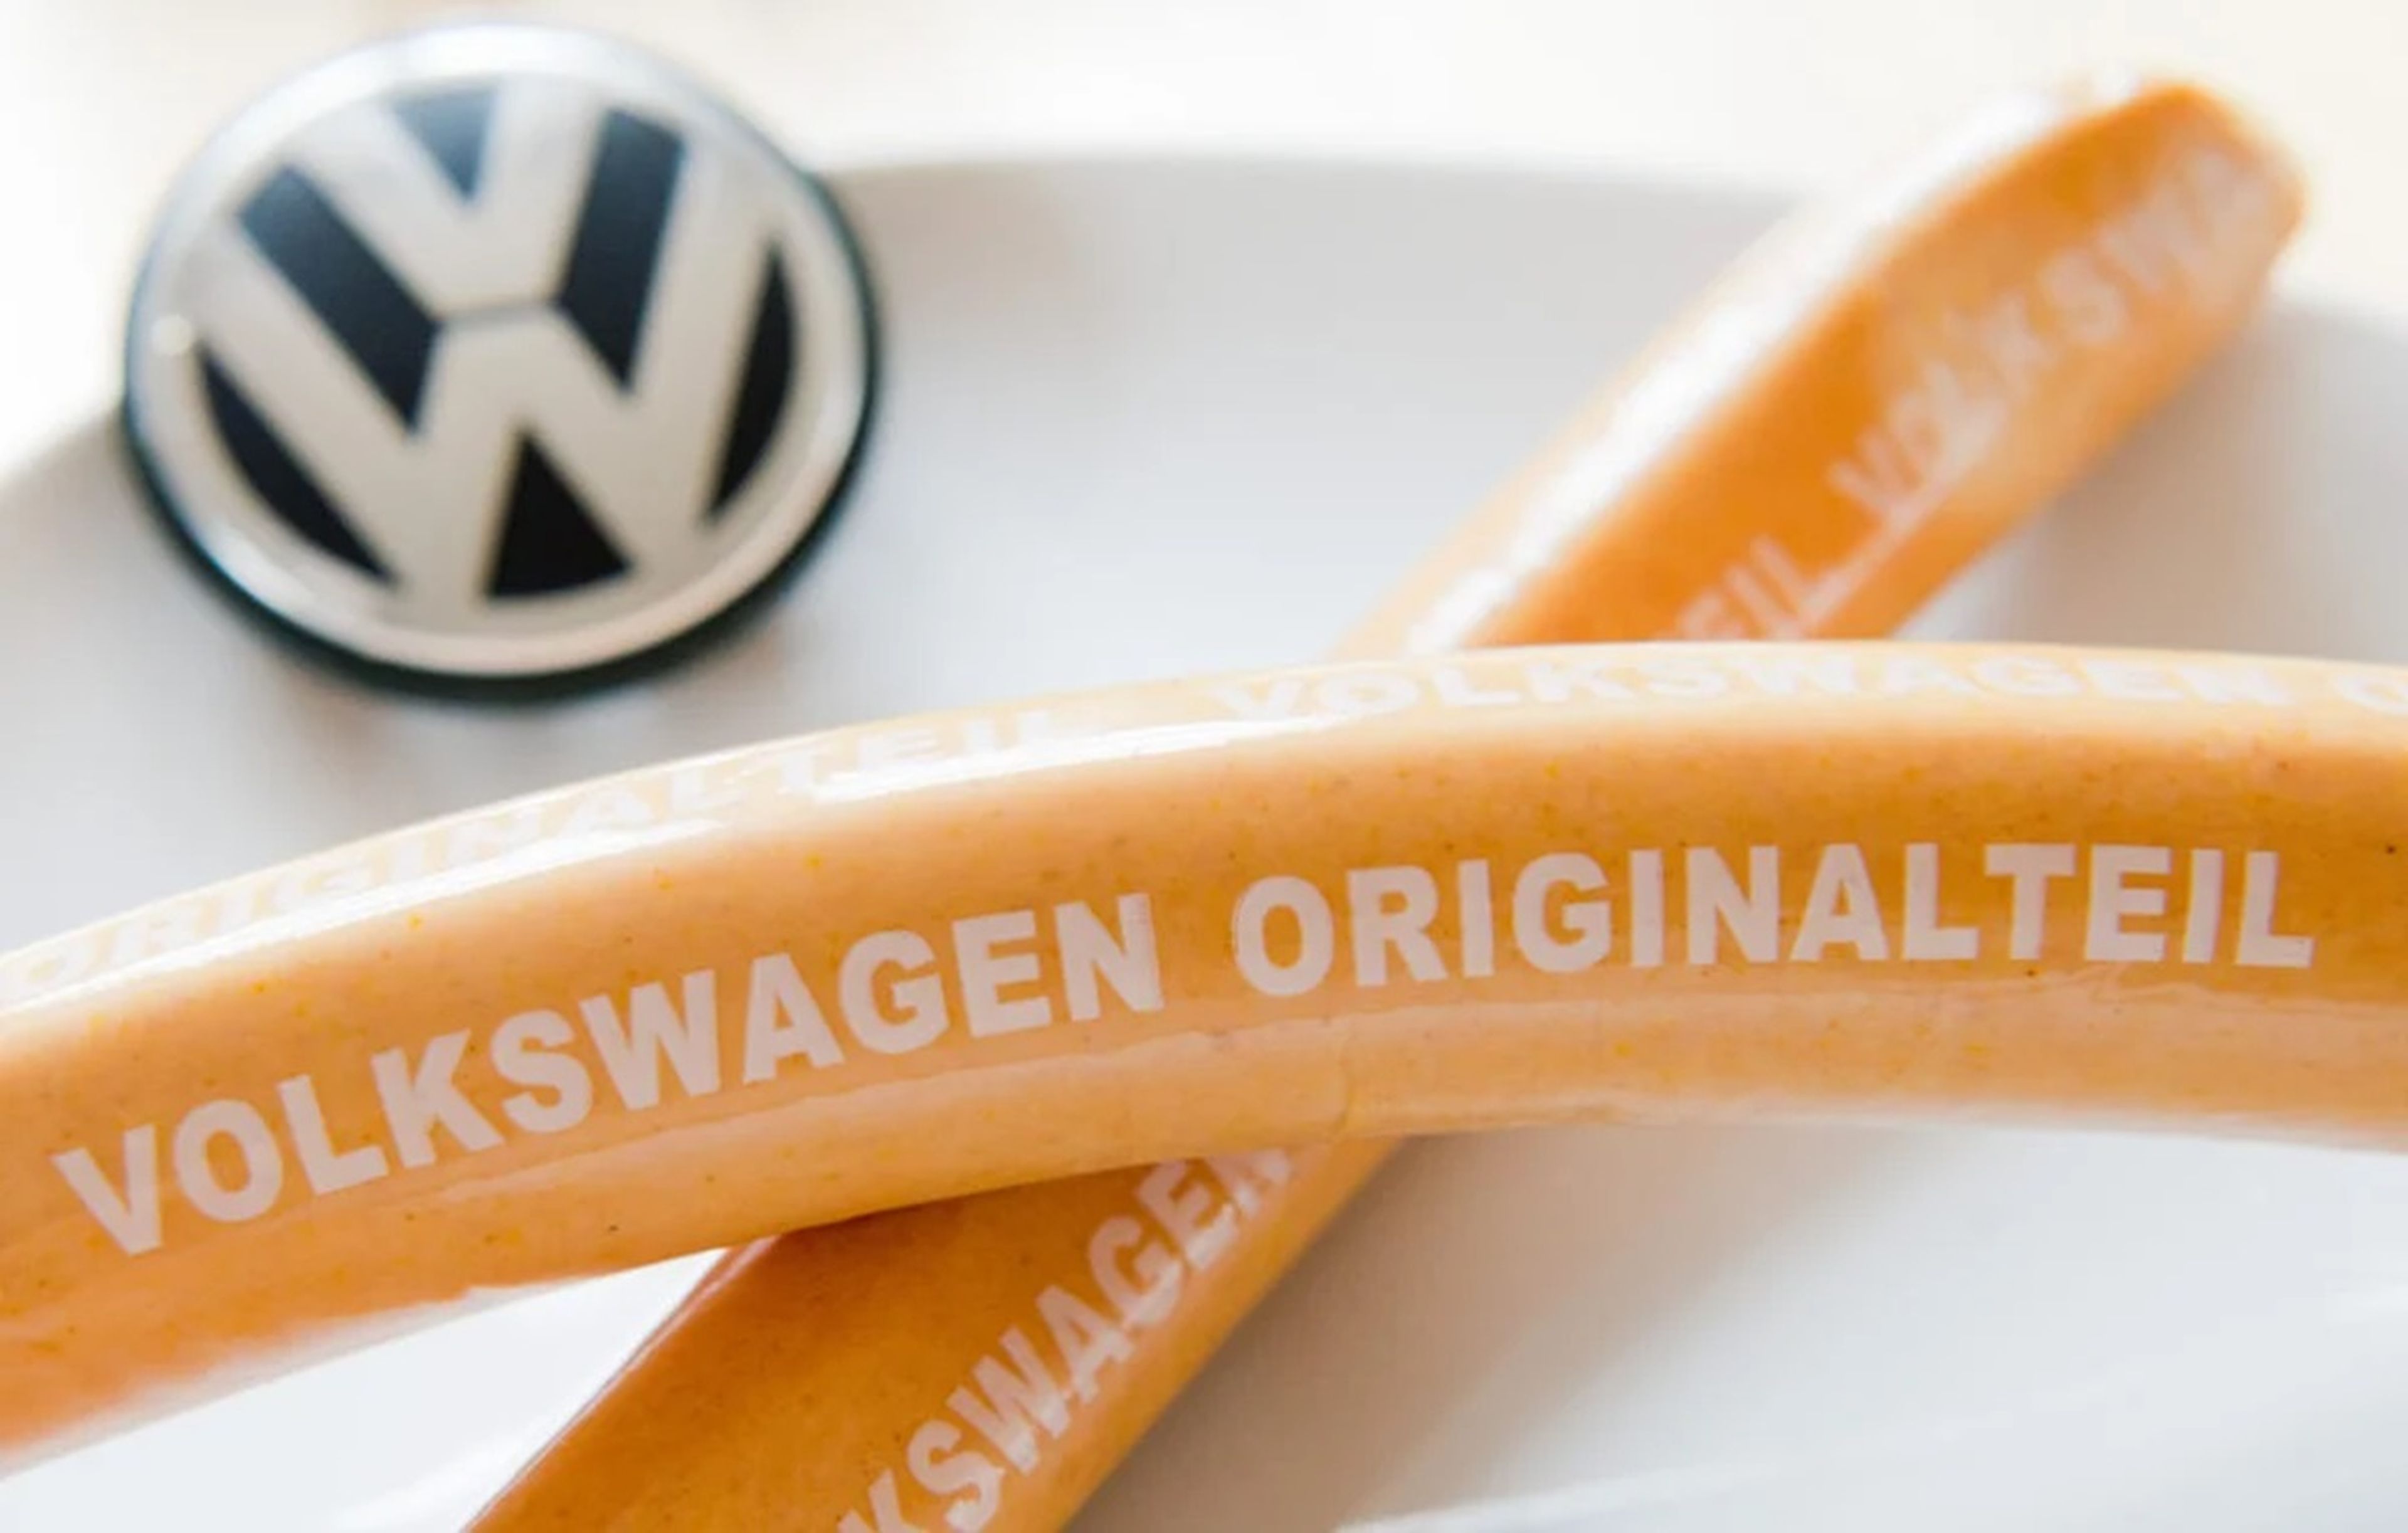 Volkswagen ha batido un nuevo récord de ventas de su popular currywurst. El fabricante de automóviles lo ha anunciado en un comunicado de prensa.